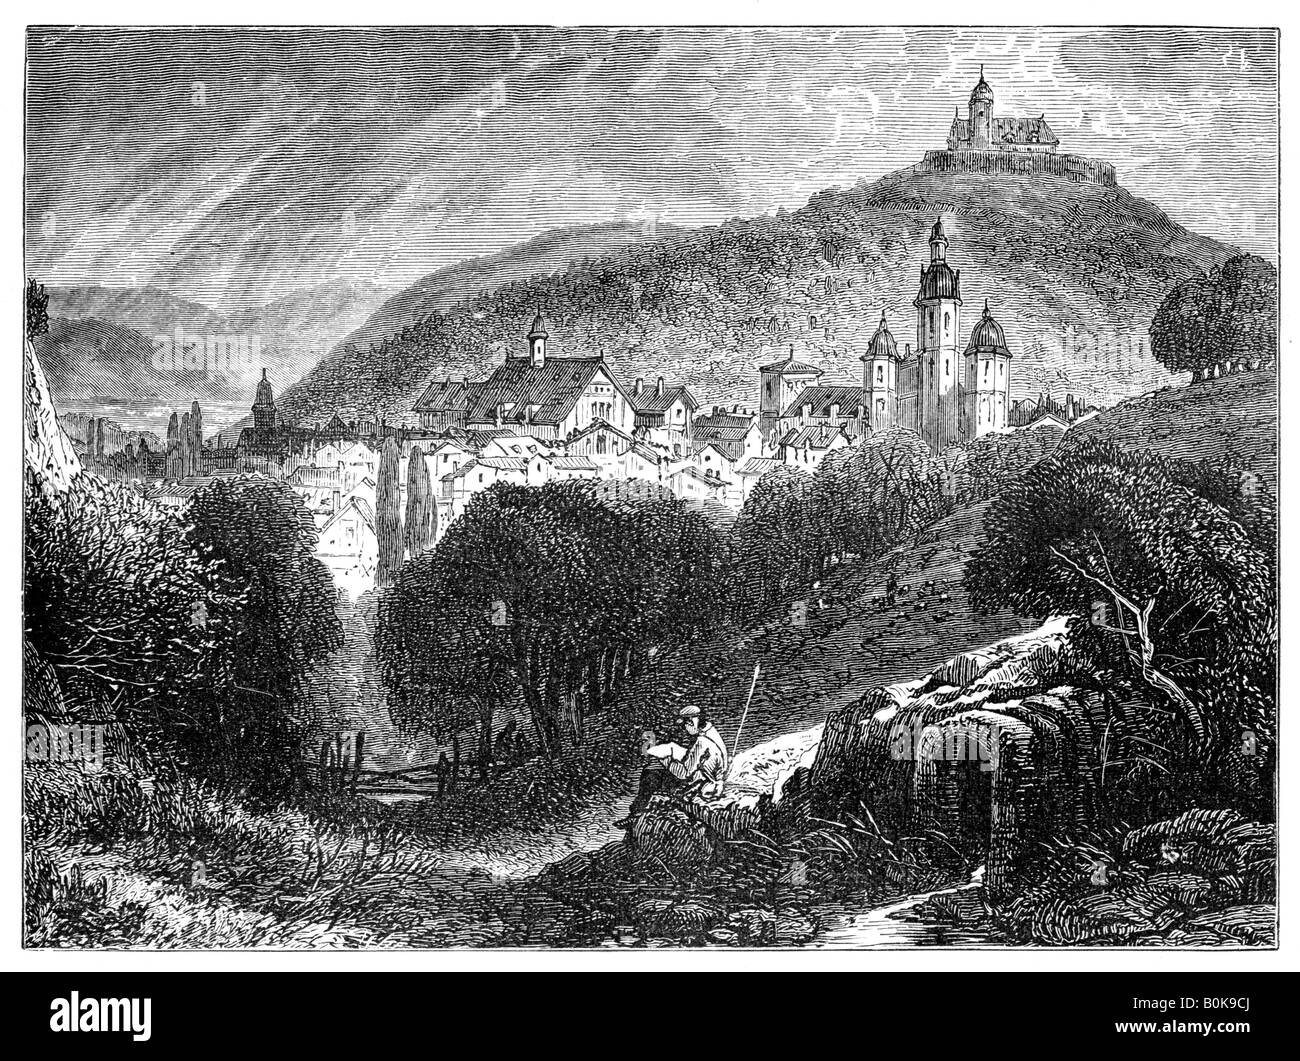 Coburg, Baviera, Alemania, 1900. Artista: Desconocido Foto de stock